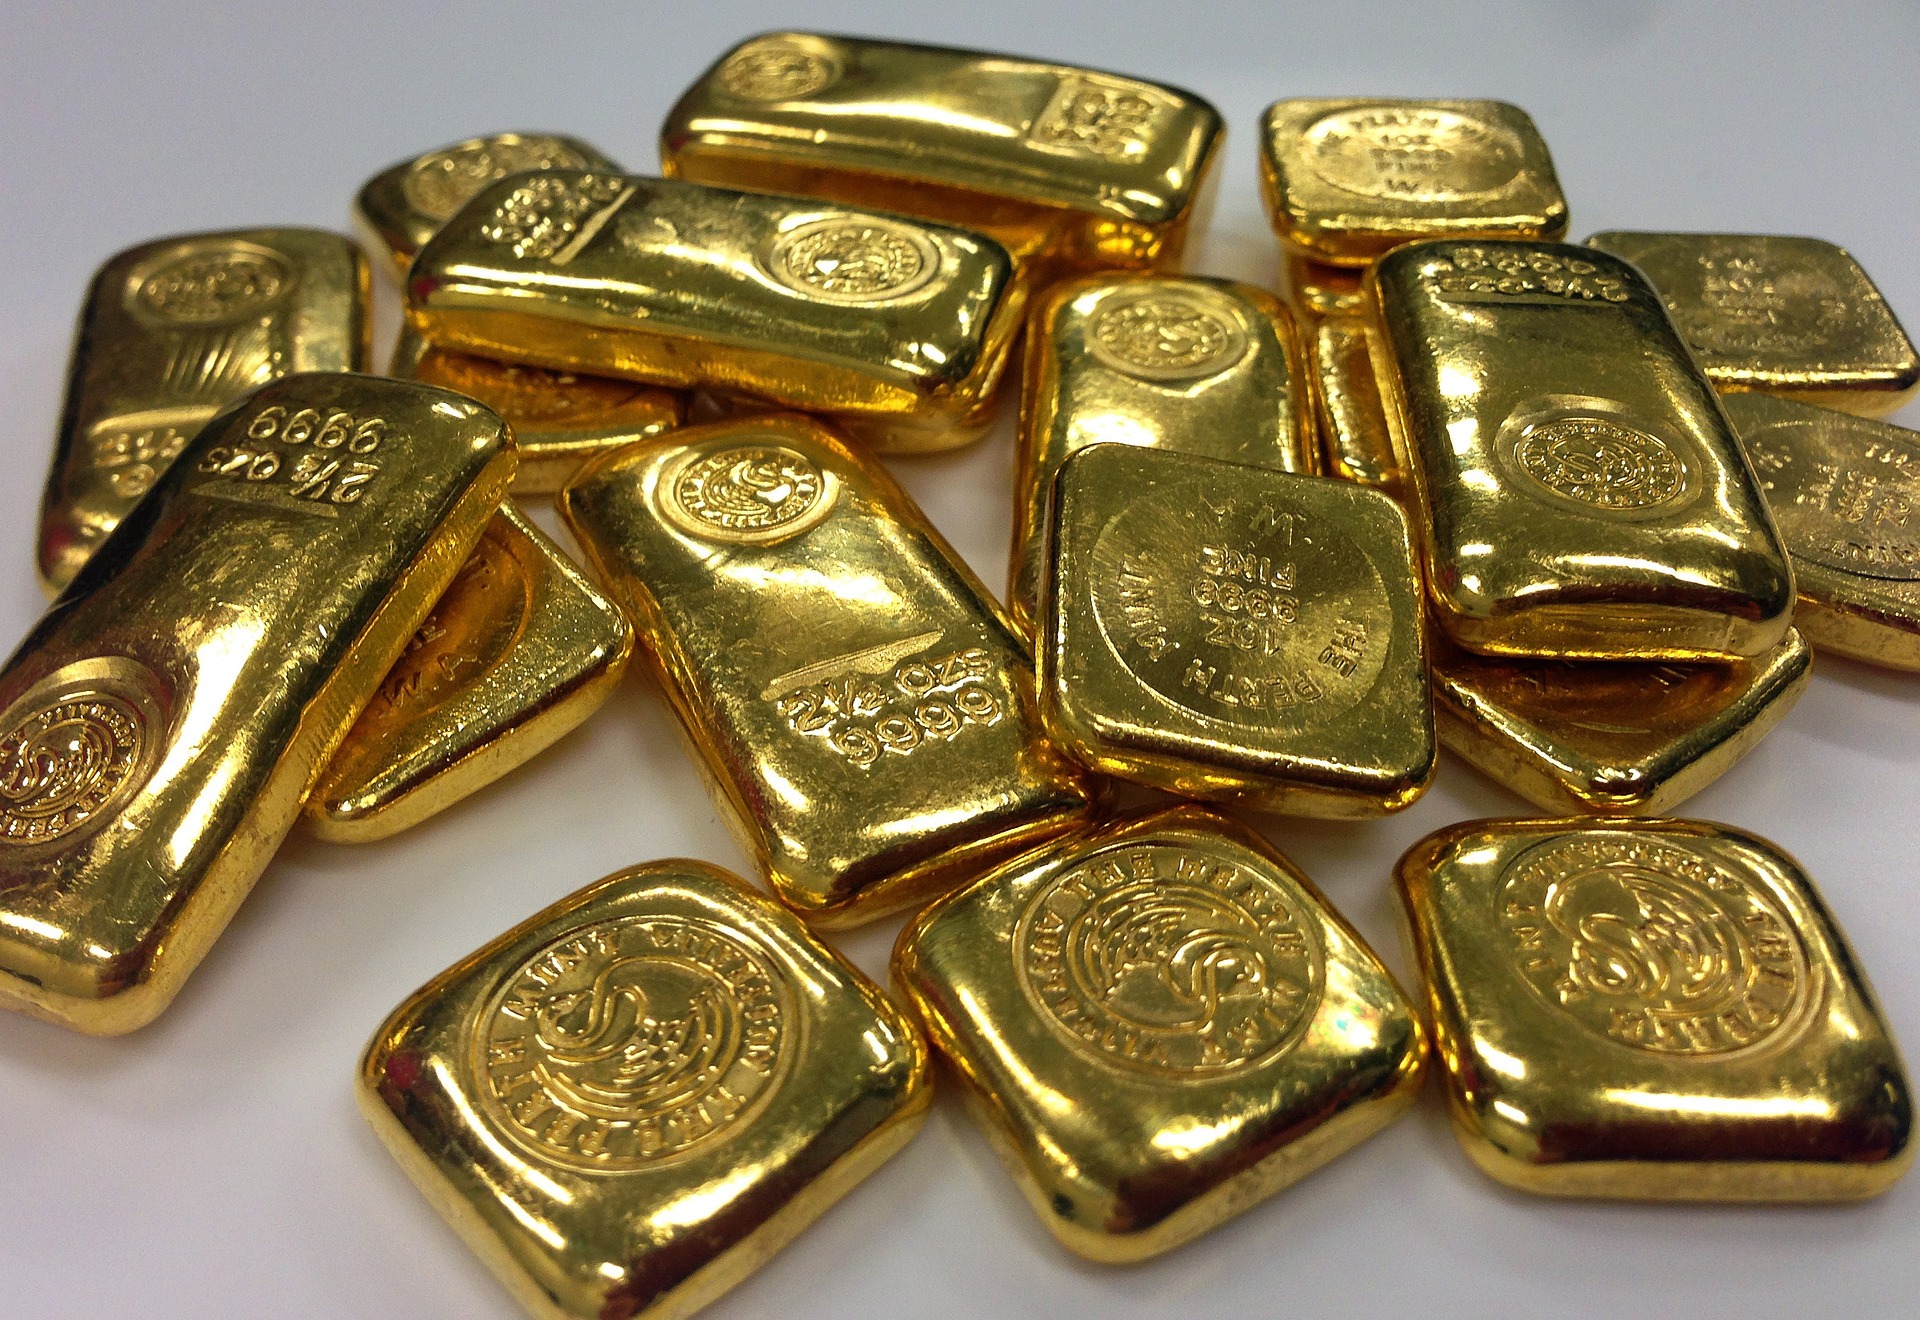 Gold Hallmarks for Gold Bullion Investment